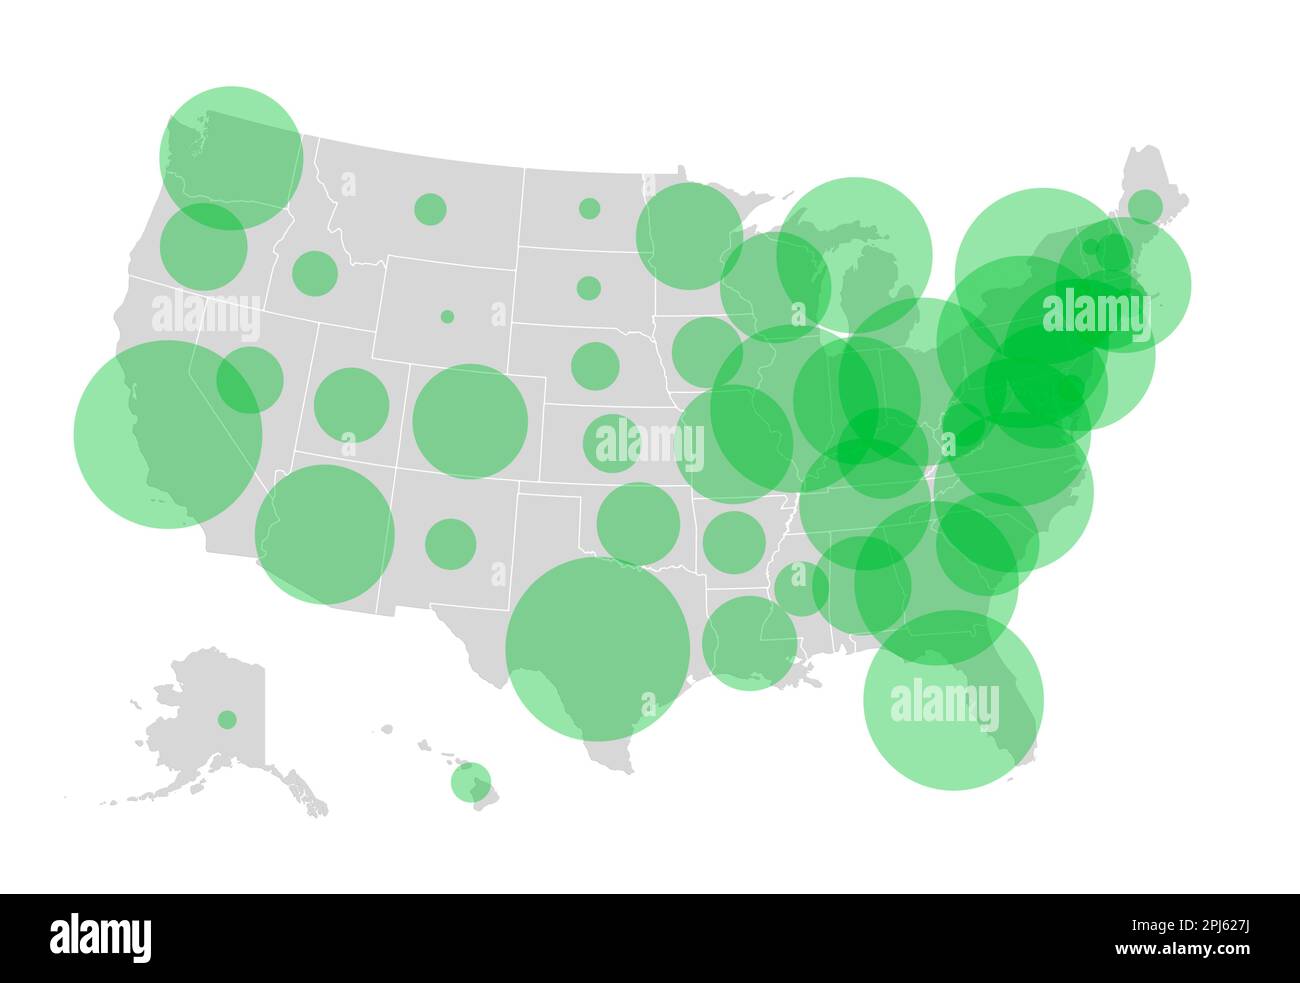 Carte des États-Unis d'Amérique (USA) avec cercles verts transparents représentant la population de chaque État. Illustration de la population aux États-Unis. Banque D'Images